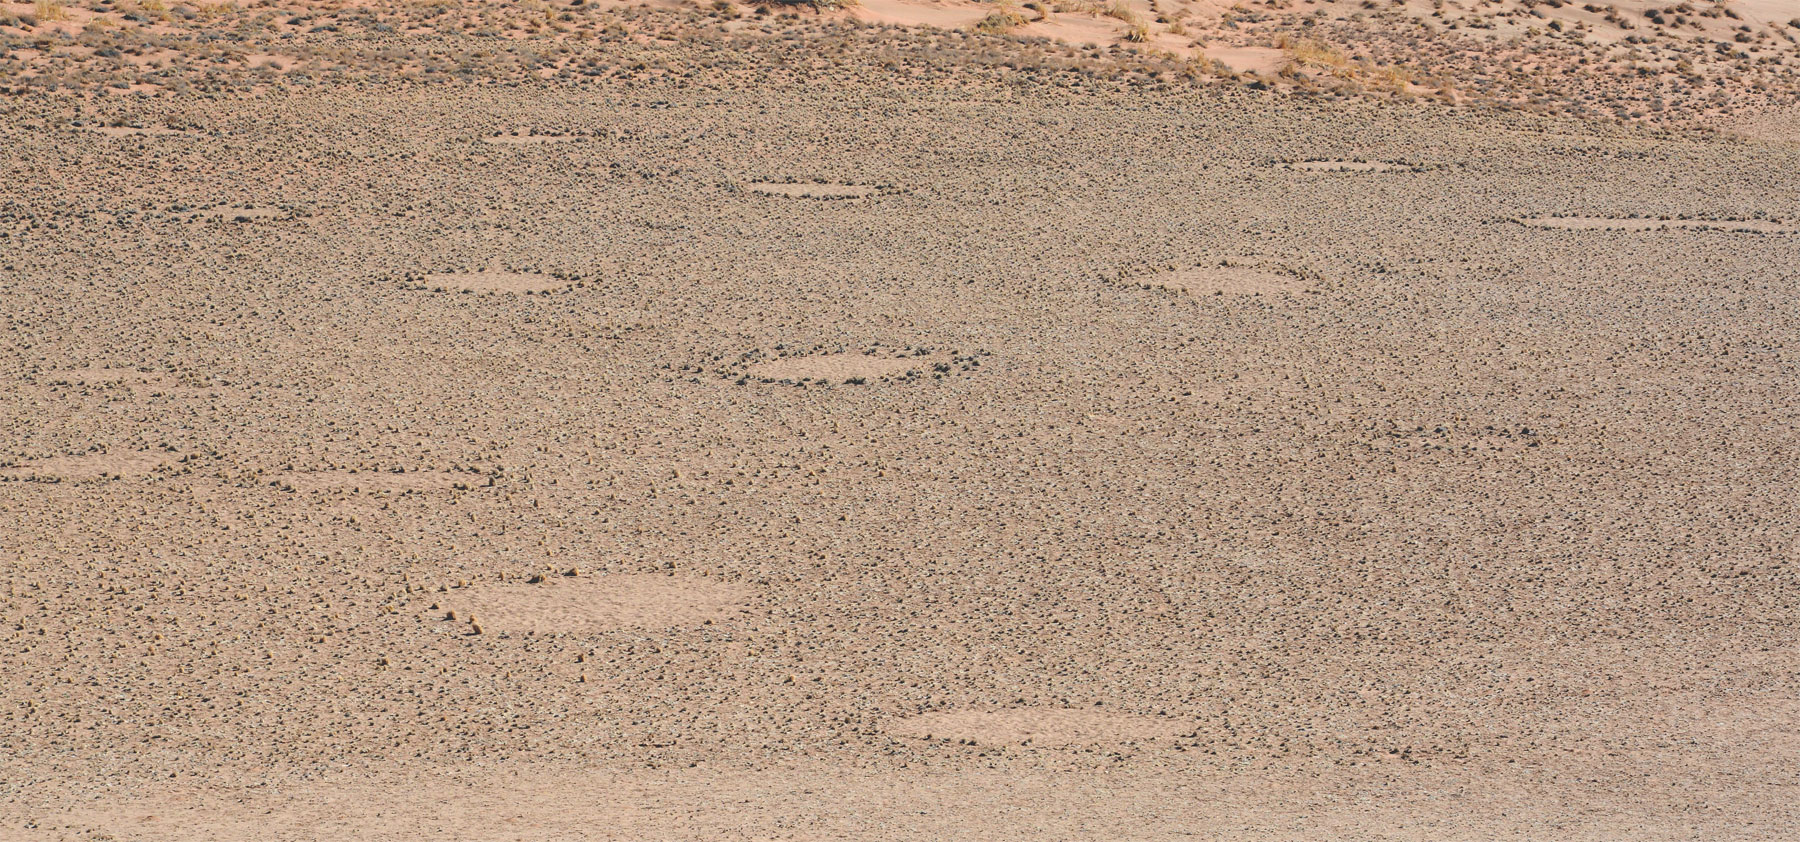    Rätselhafte Kreise in der Namib